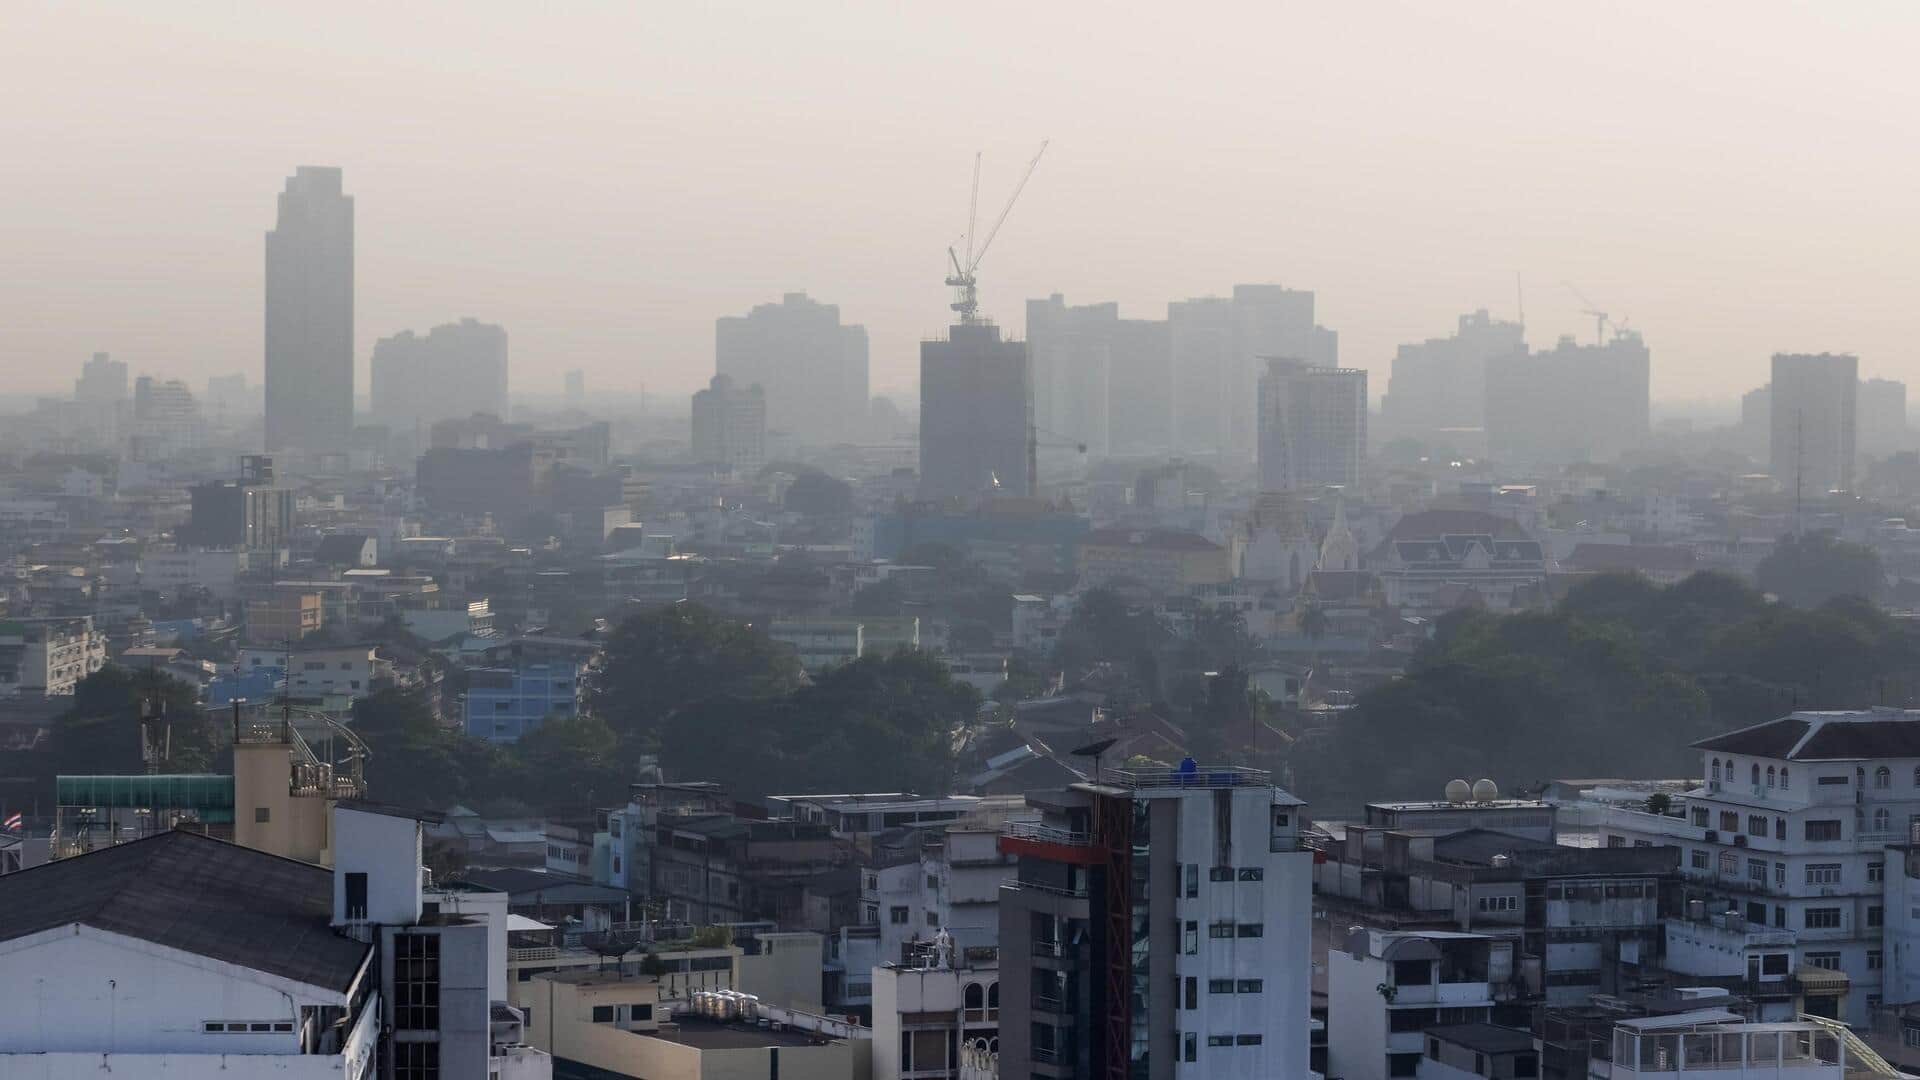 दक्षिण एशिया क्यों वायु प्रदूषण का वैश्विक हॉटस्पॉट बनता जा रहा है?